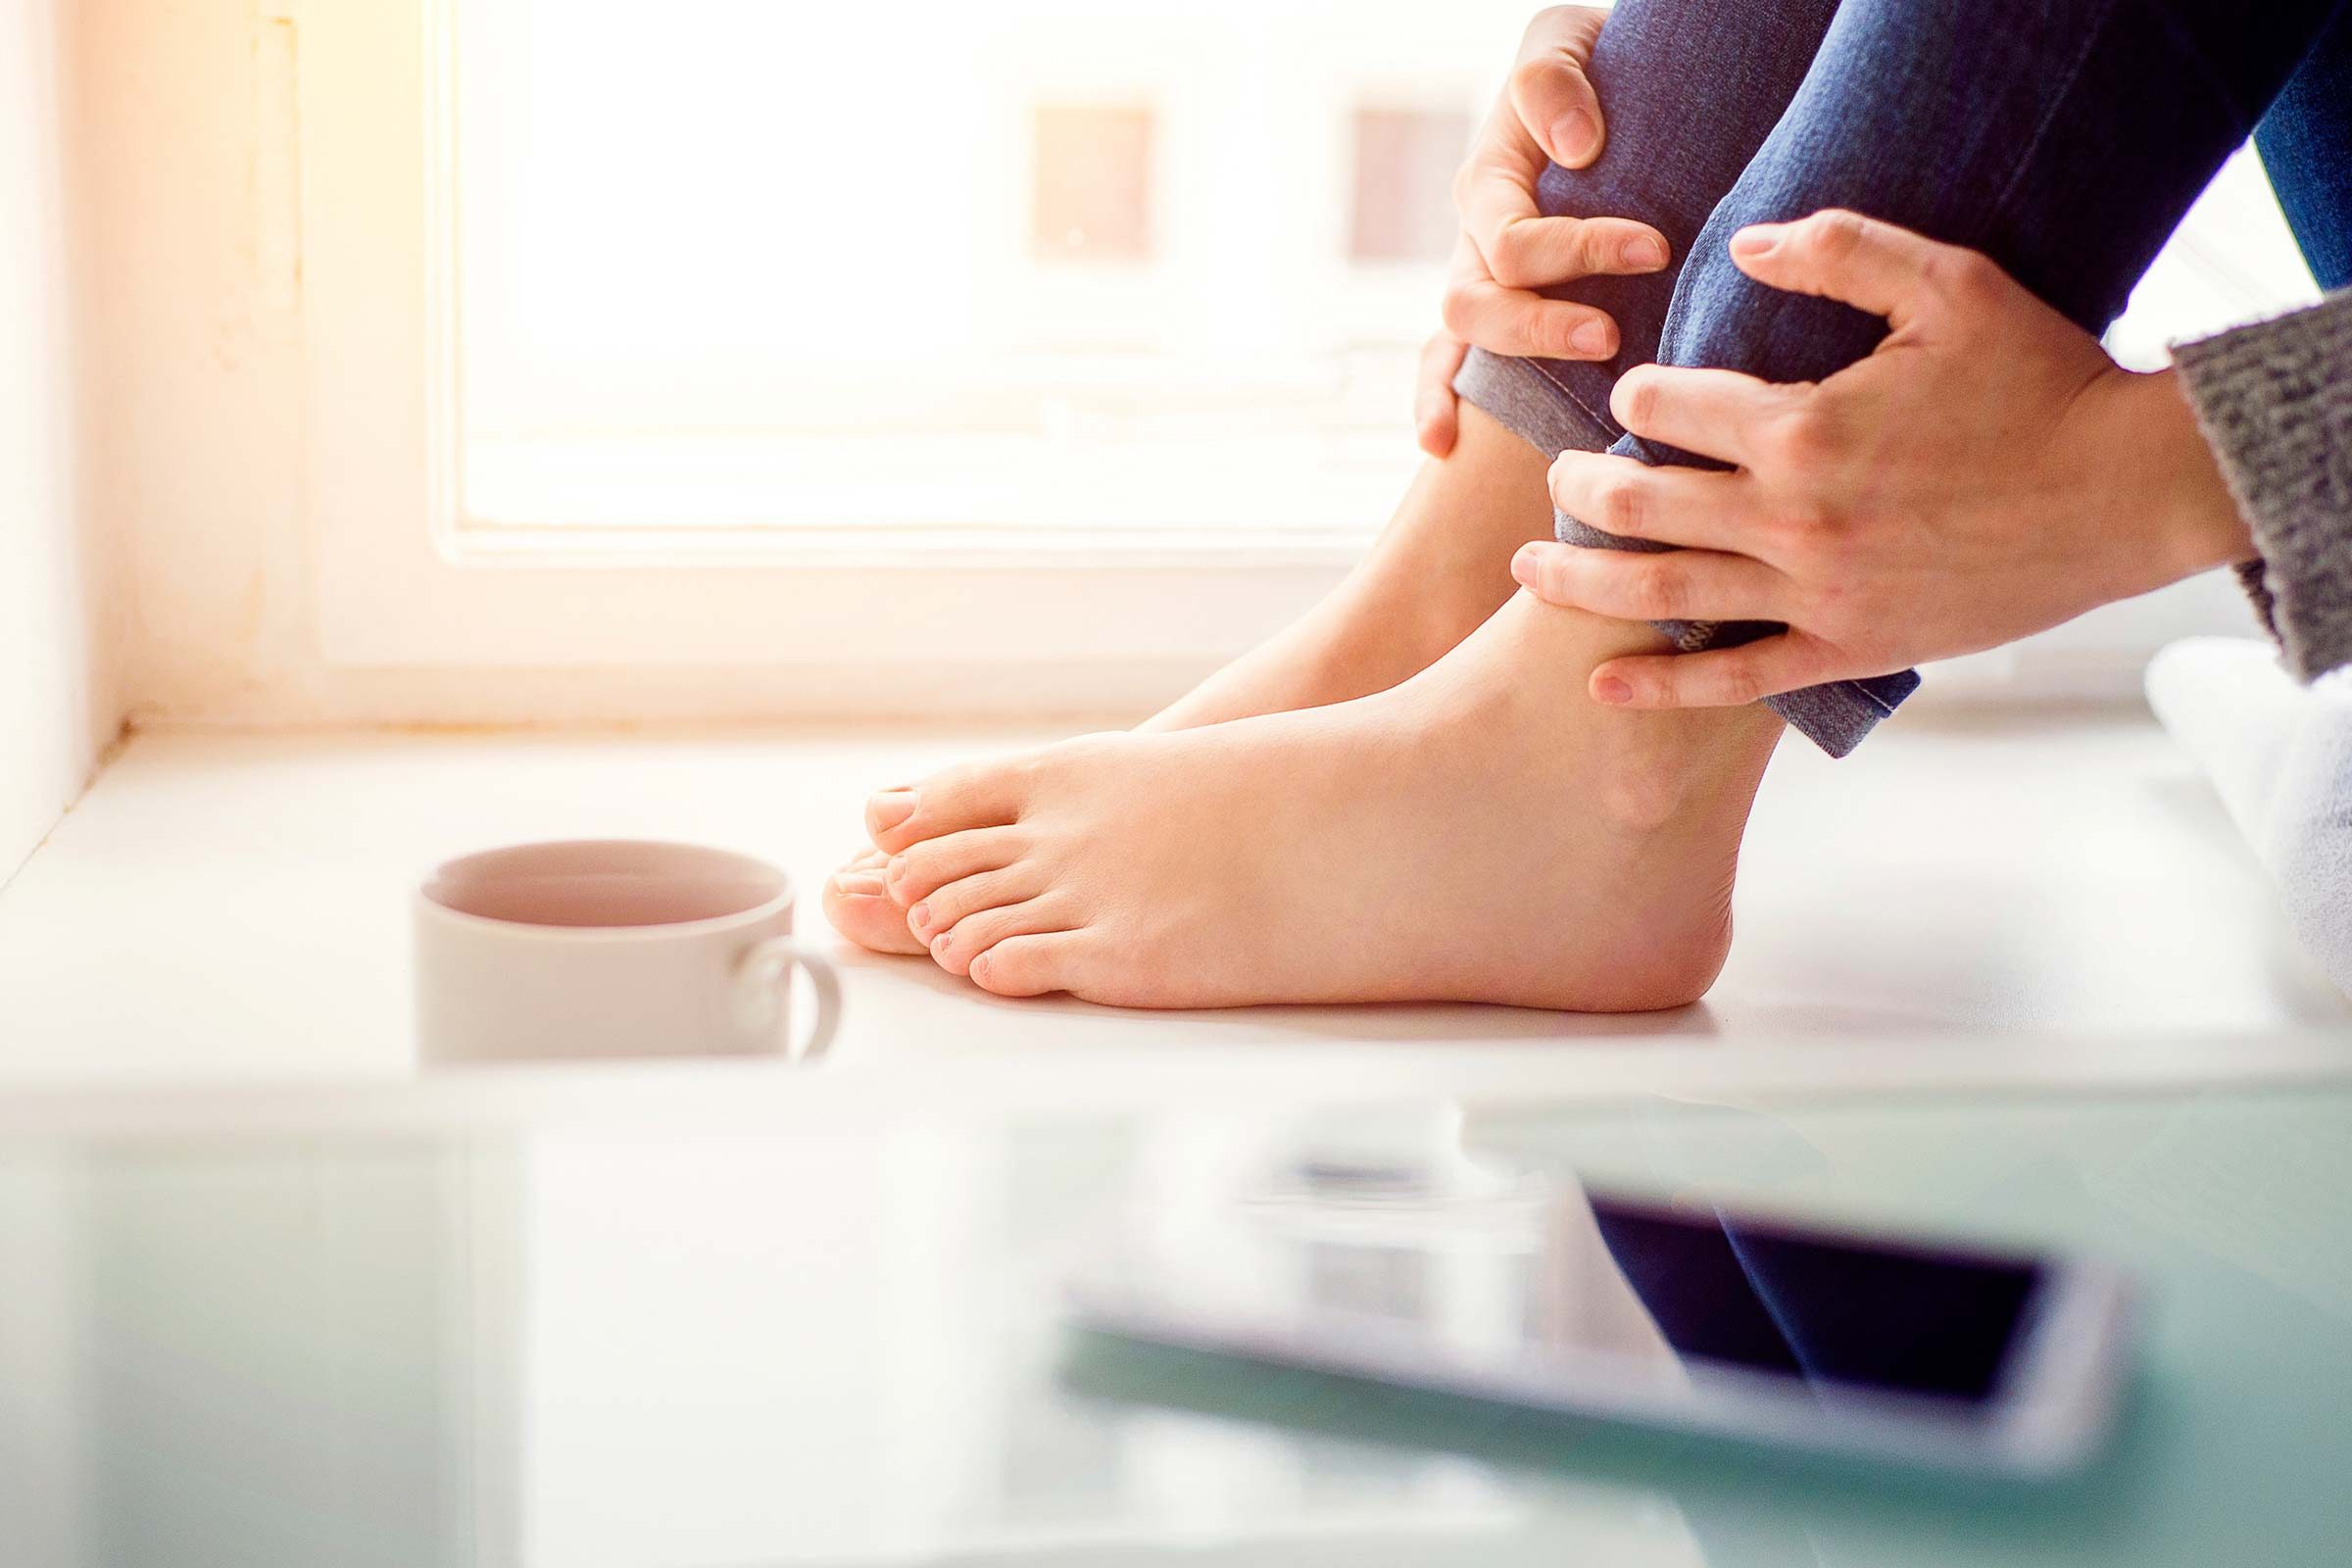 7 Foot and Toenail Fungus Treatments You Can Make at Home